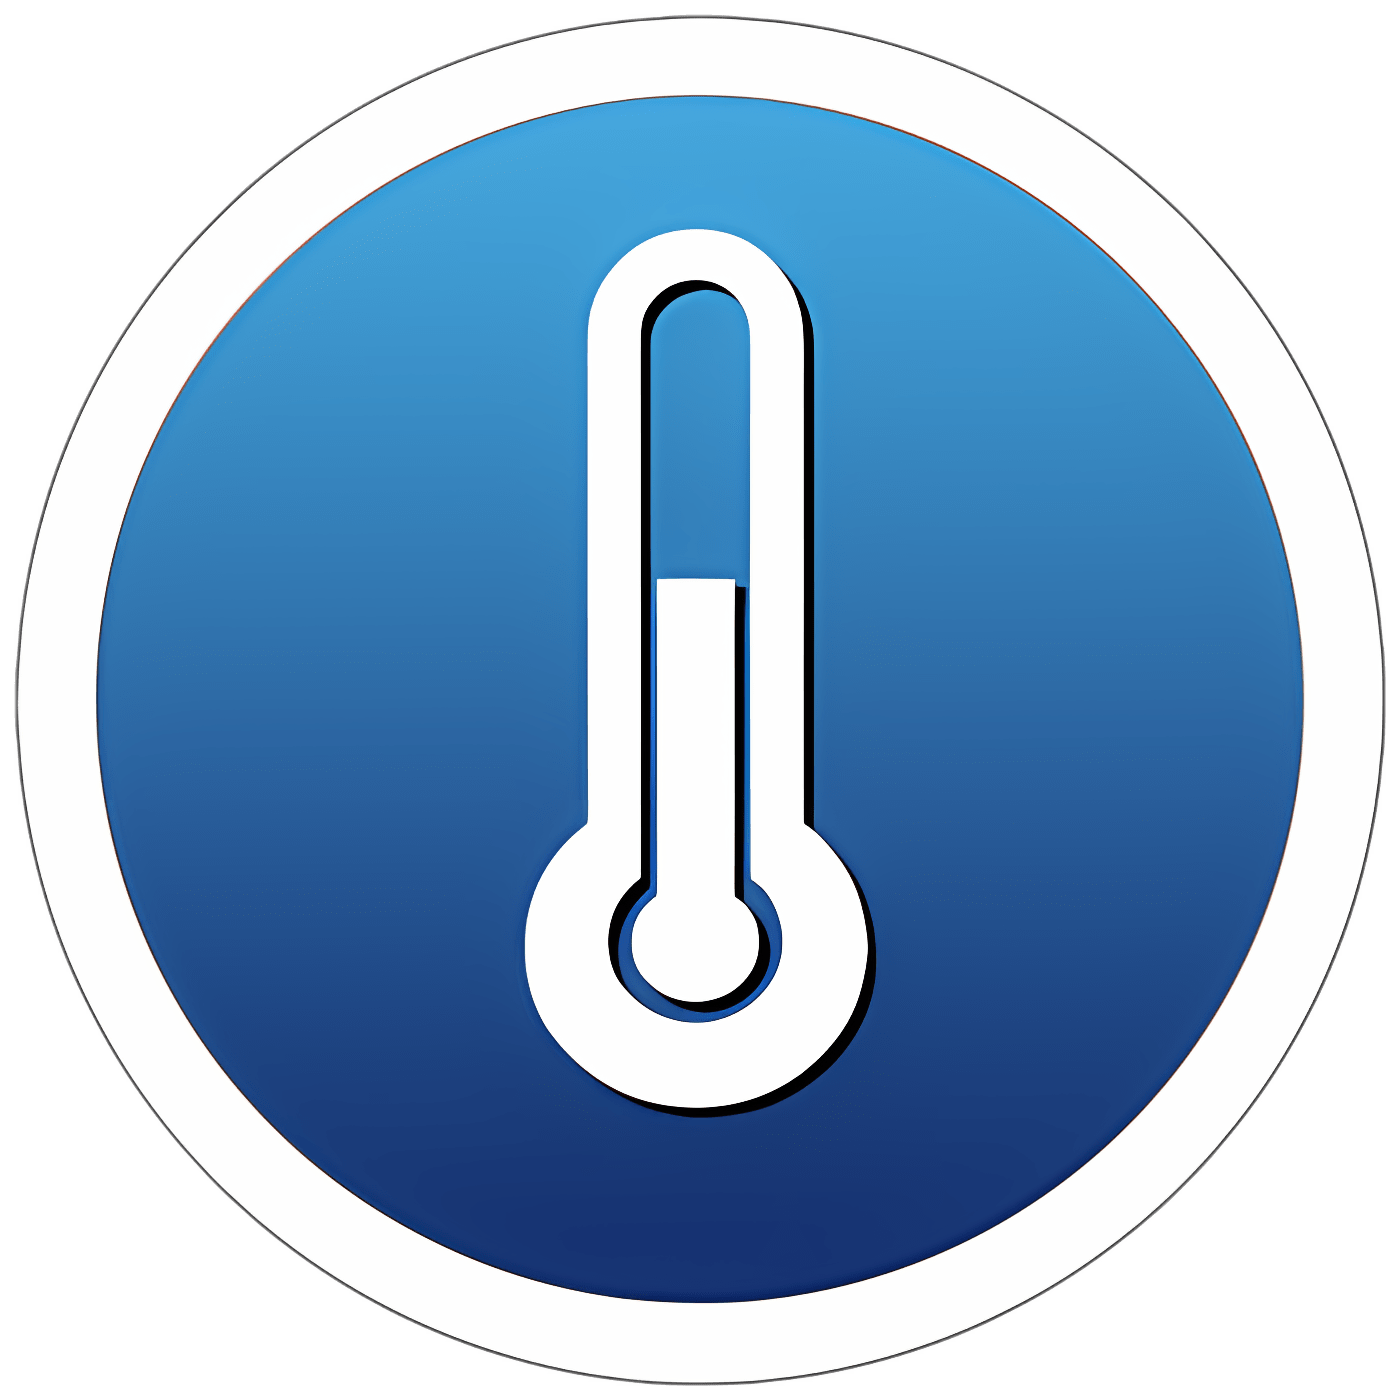 Baixar Temps - Weather, Time & Netatmo Instalar Mais recente Aplicativo Downloader